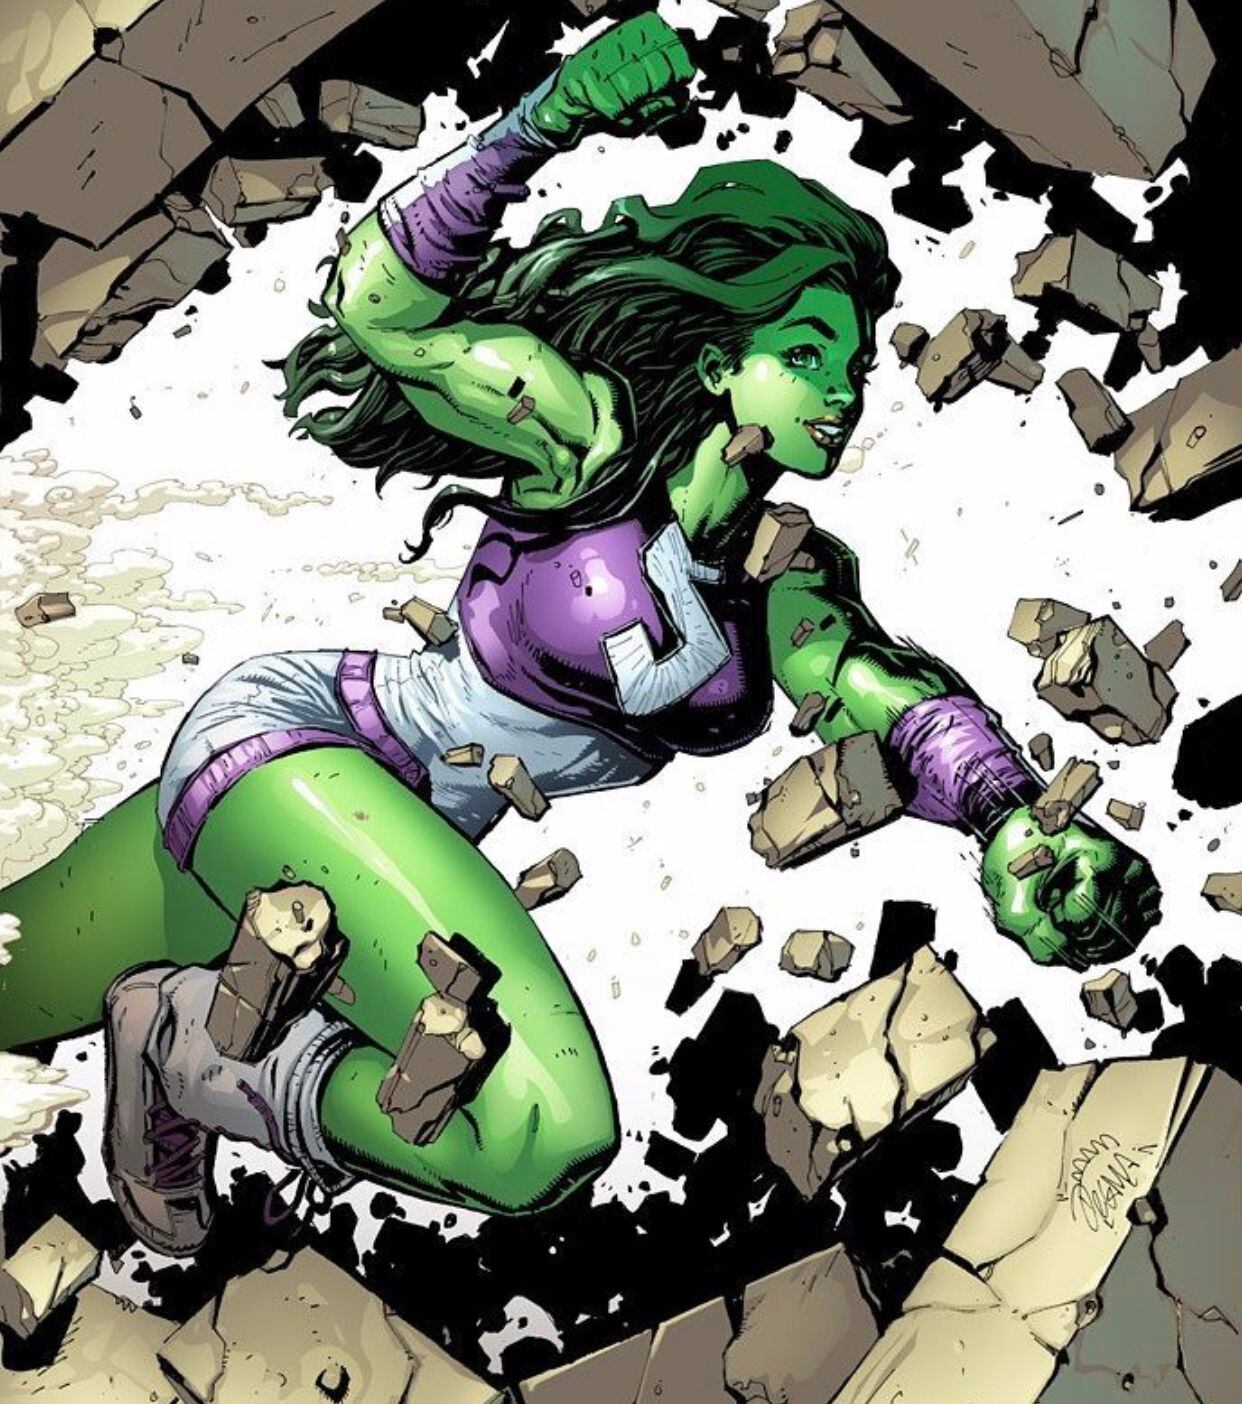 El personaje de ‘She-Hulk‘ nació en 1980 dentro de los cómics de Marvel. (Foto: Instagram / @marvelmexico)